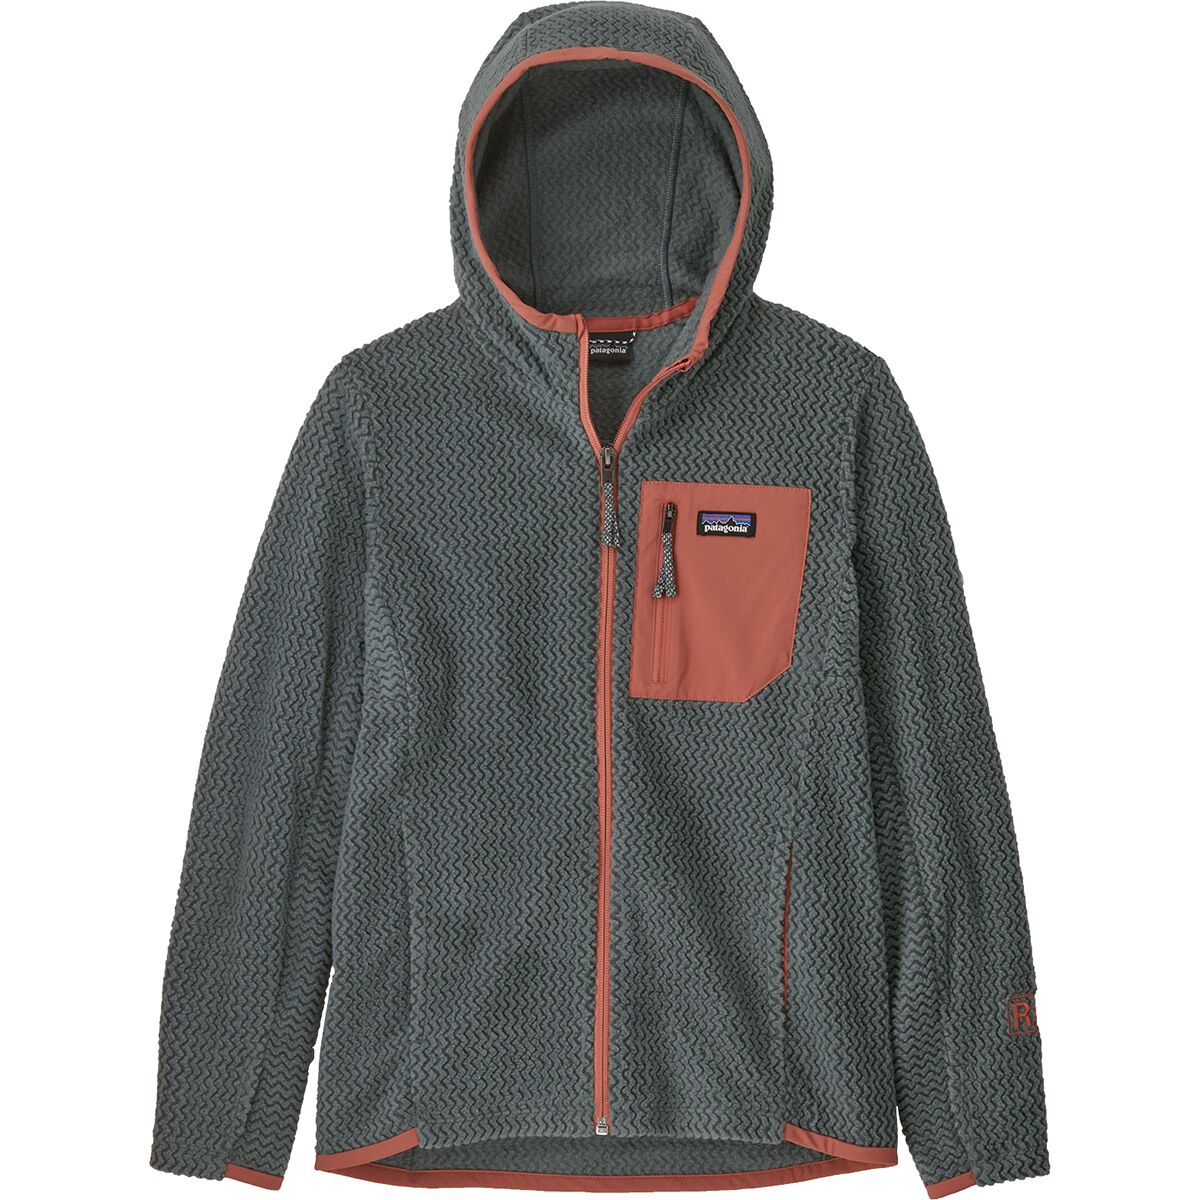 Patagonia R1 Air Full-Zip Hooded Jacket - Boys'